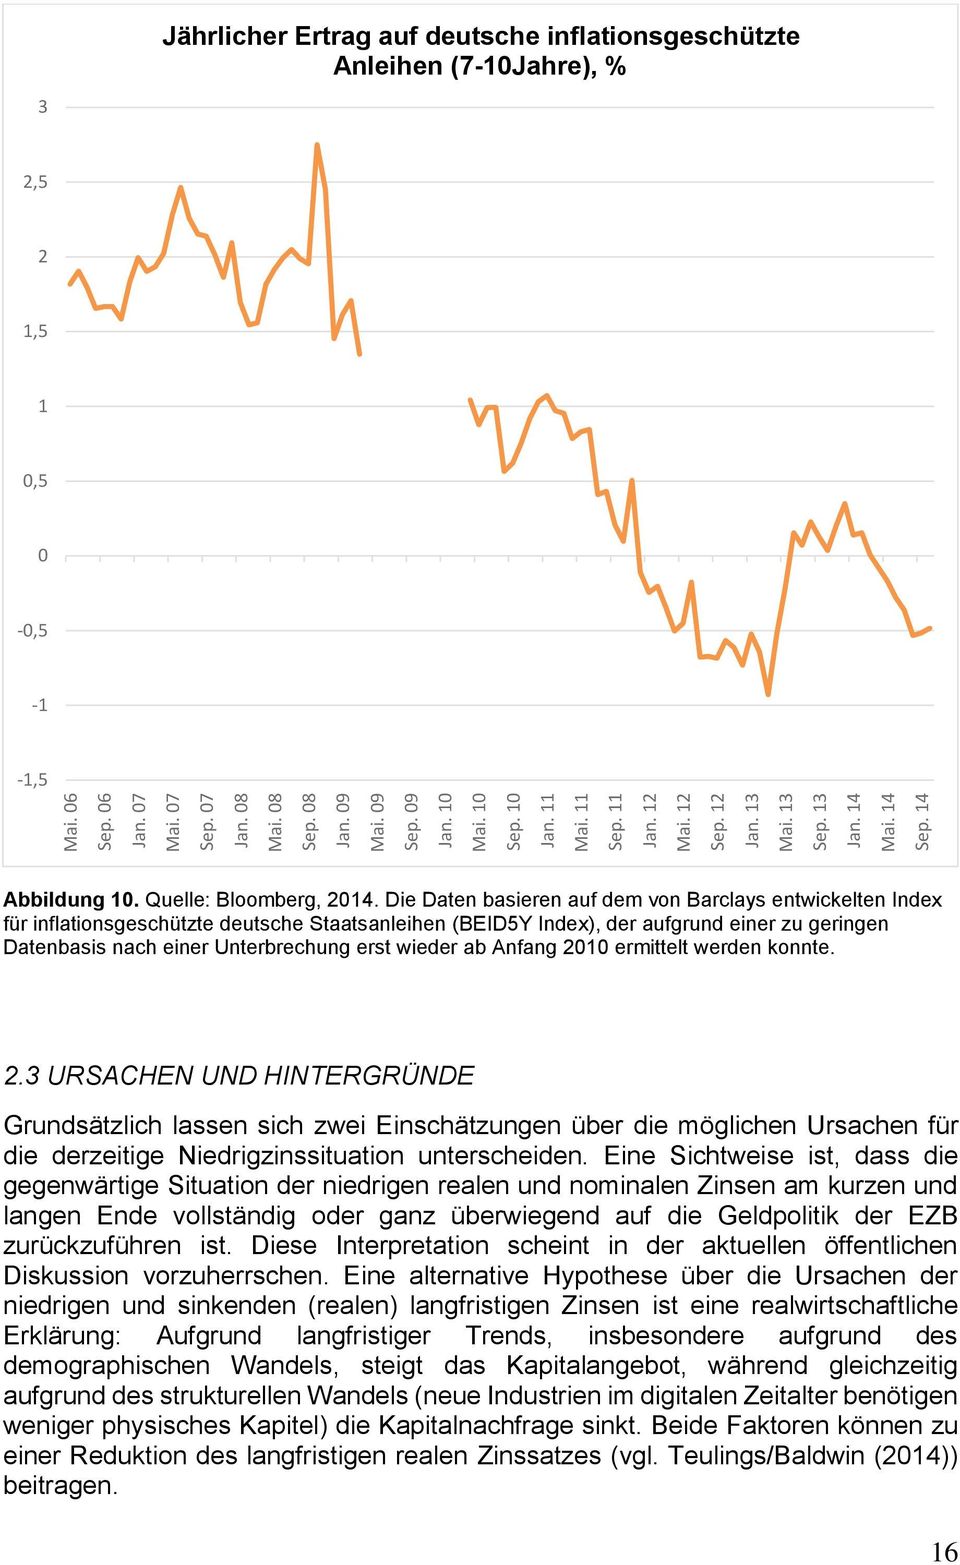 Die Daten basieren auf dem von Barclays entwickelten Index für inflationsgeschützte deutsche Staatsanleihen (BEID5Y Index), der aufgrund einer zu geringen Datenbasis nach einer Unterbrechung erst